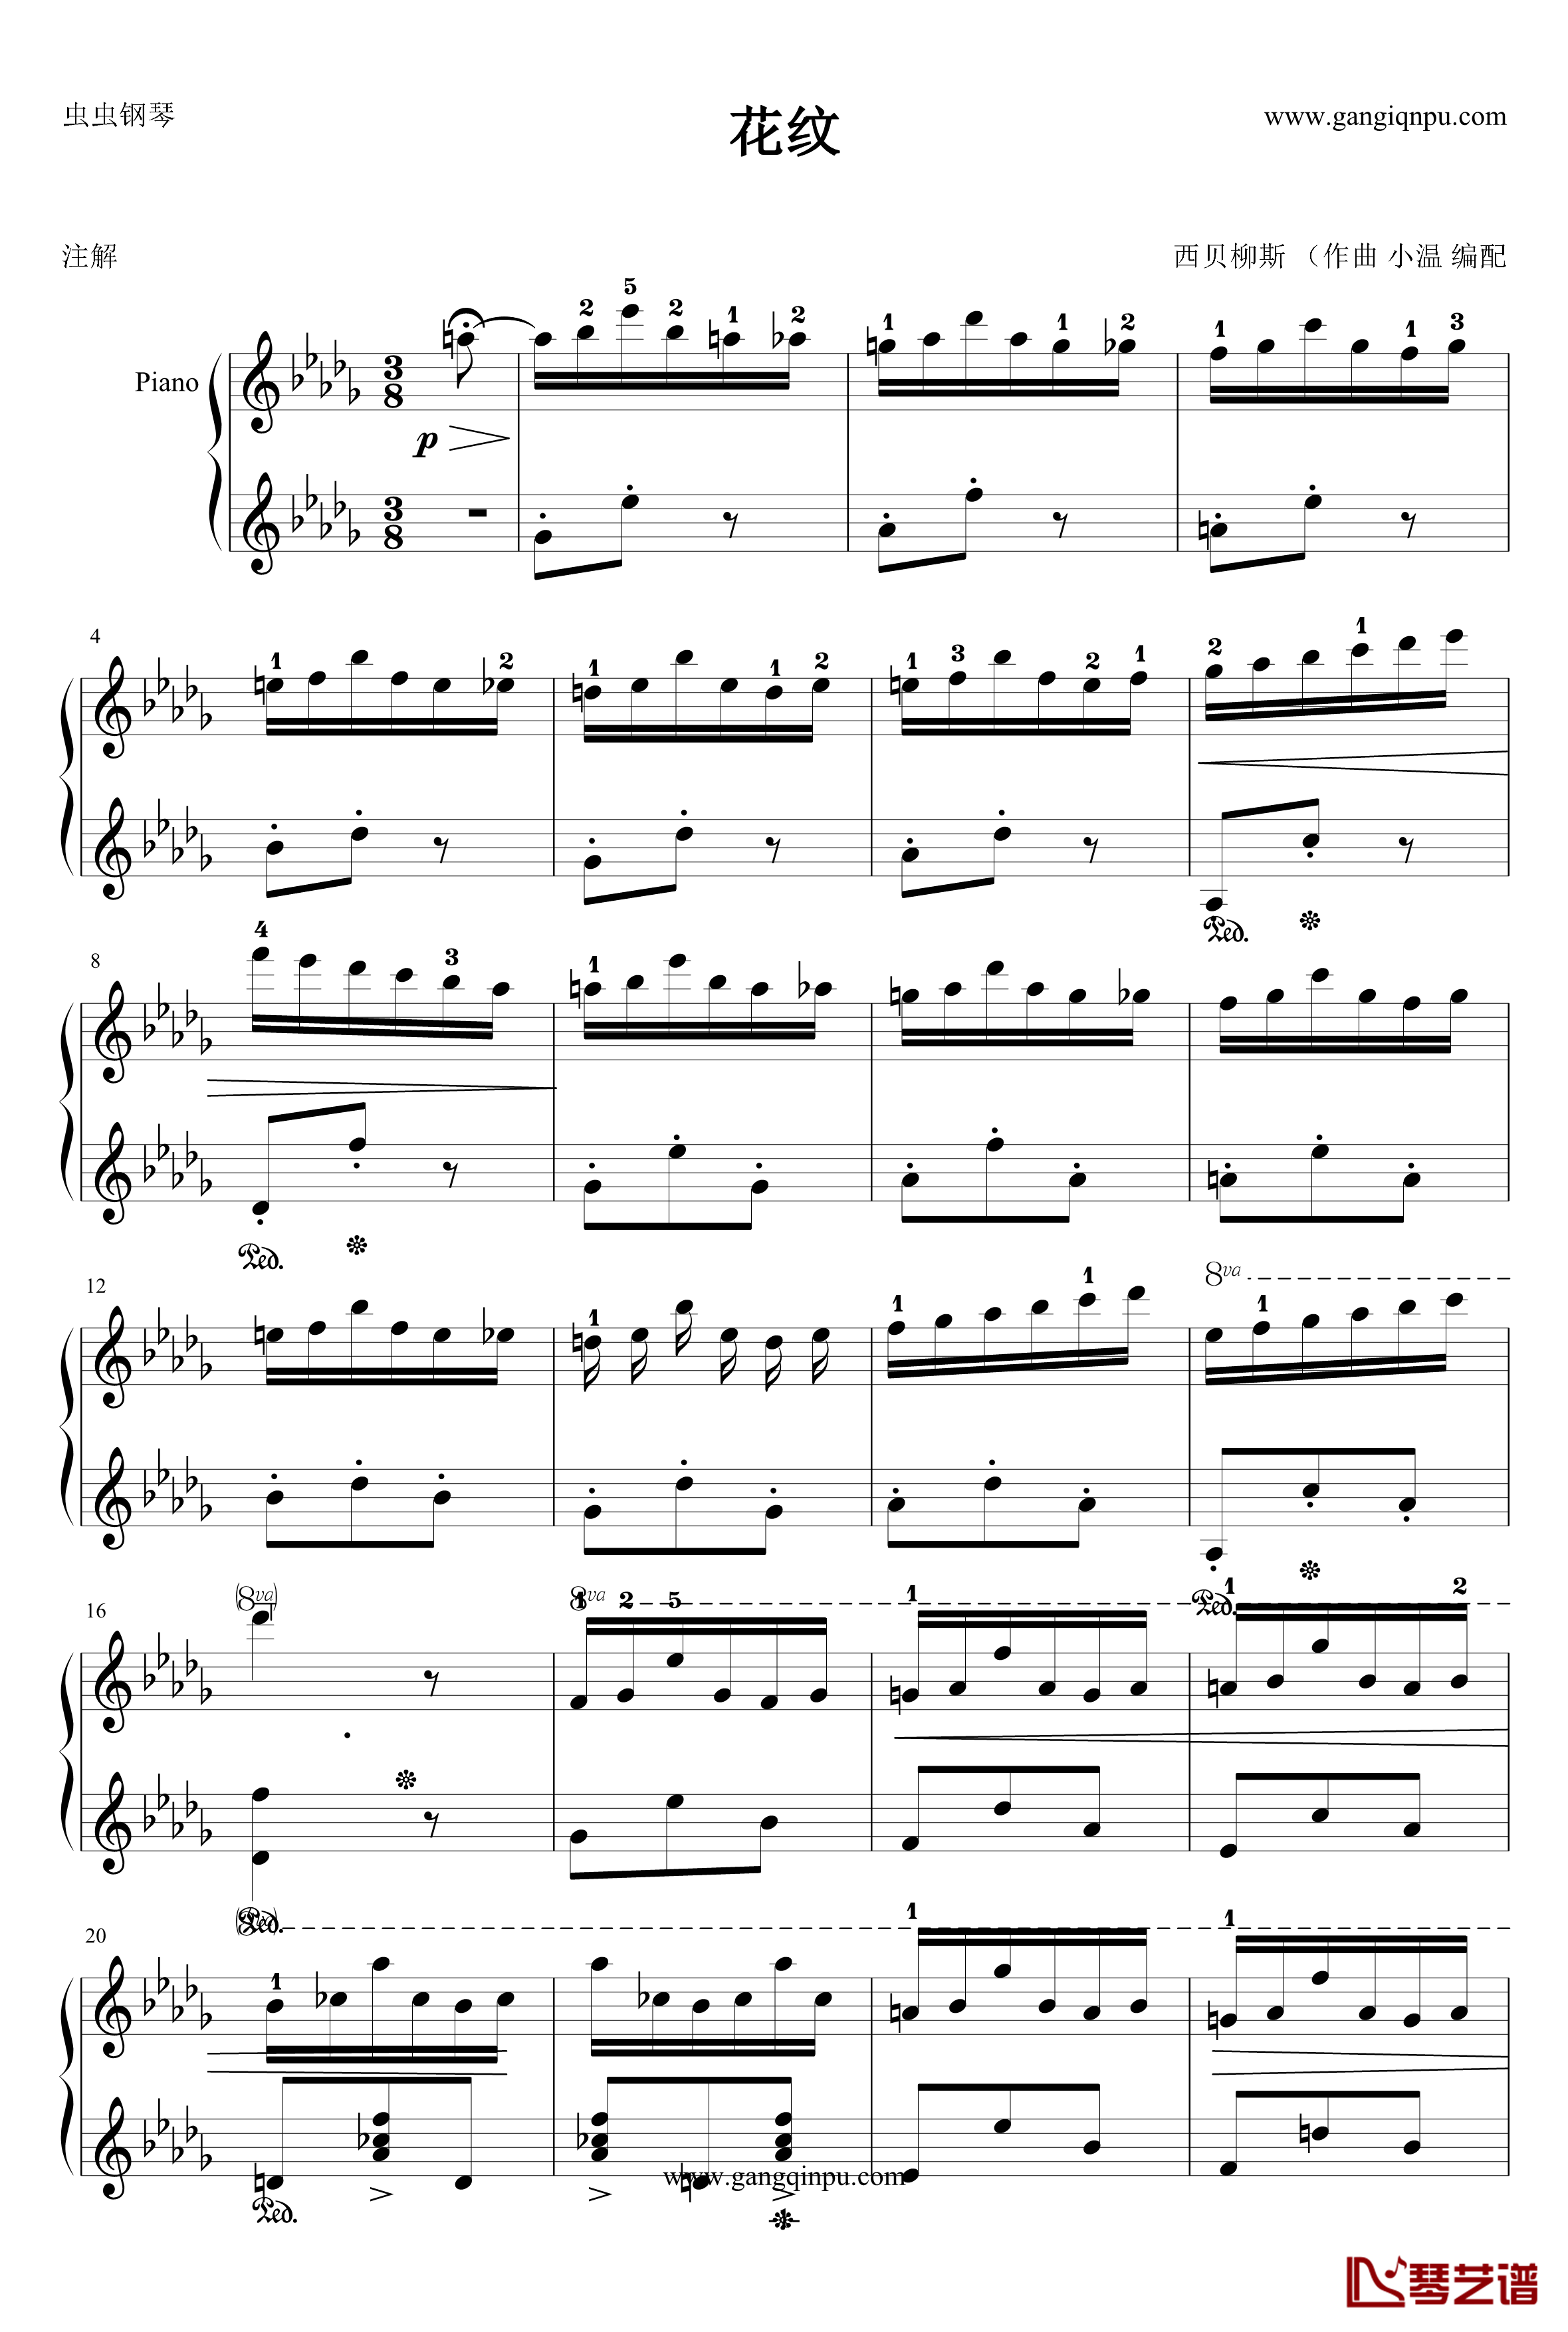 花纹钢琴谱-西贝柳斯1